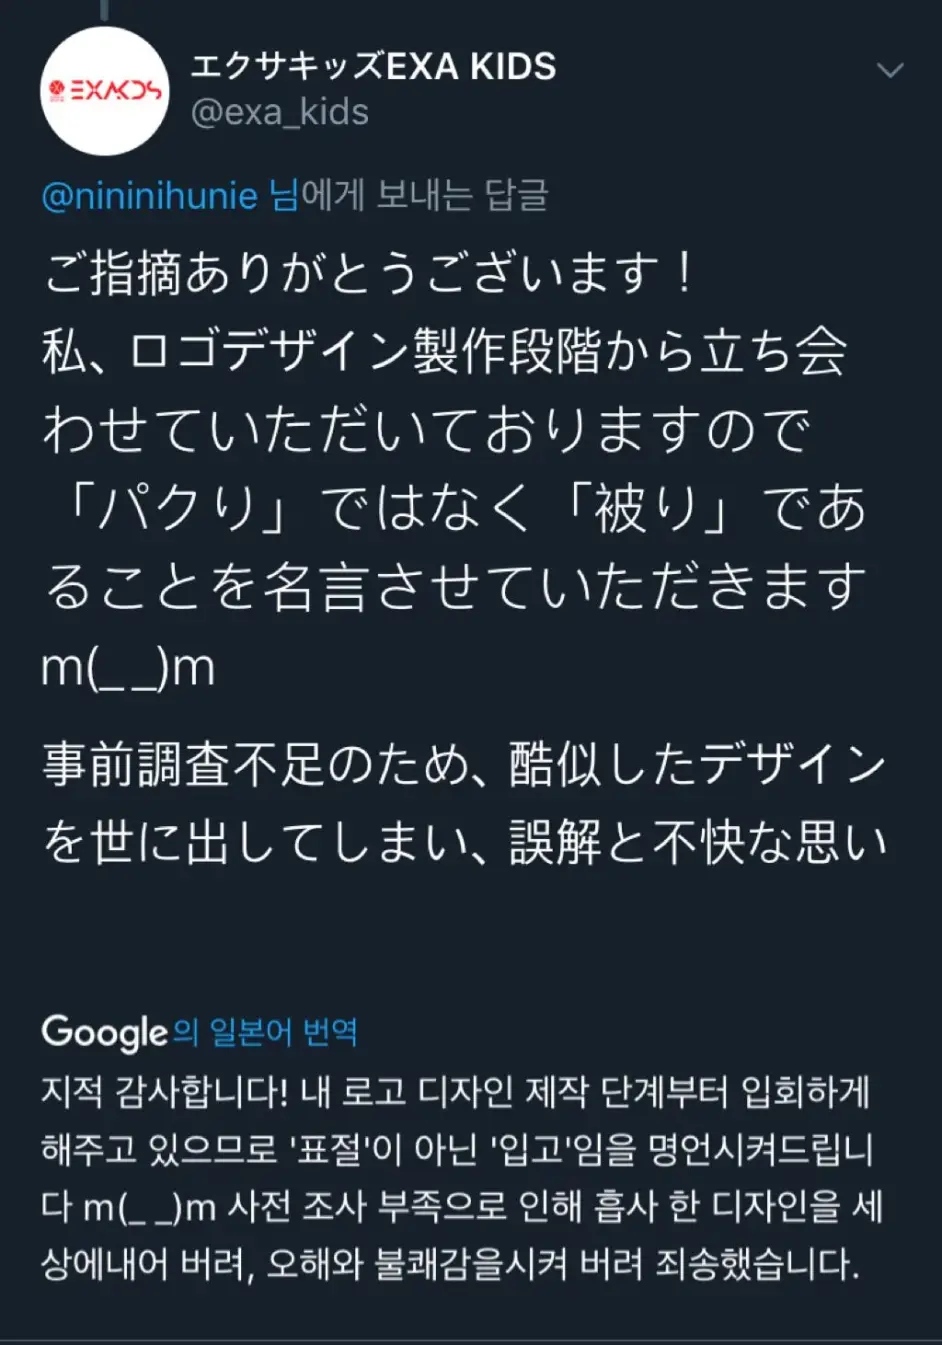 韩网热议 涉嫌抄袭exo的logo的某日本品牌 哔哩哔哩